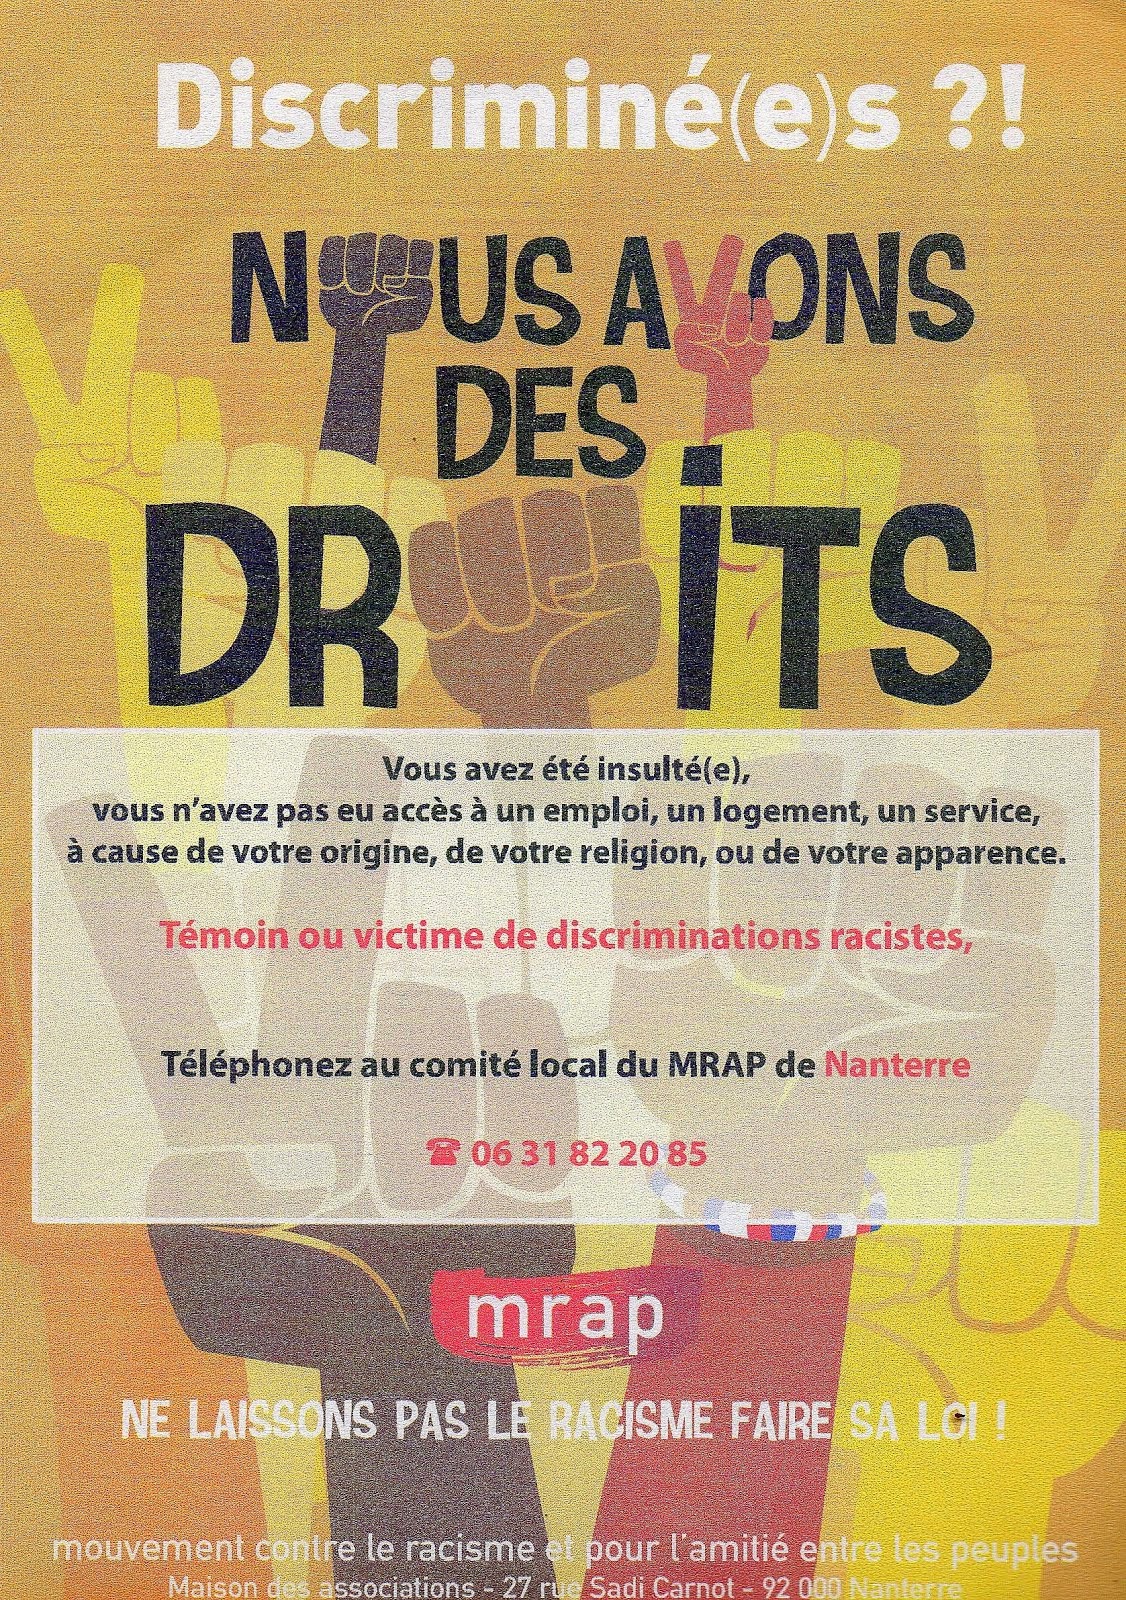 Pour contacter le MRAP à Nanterre   mrap.nanterre@orange.fr